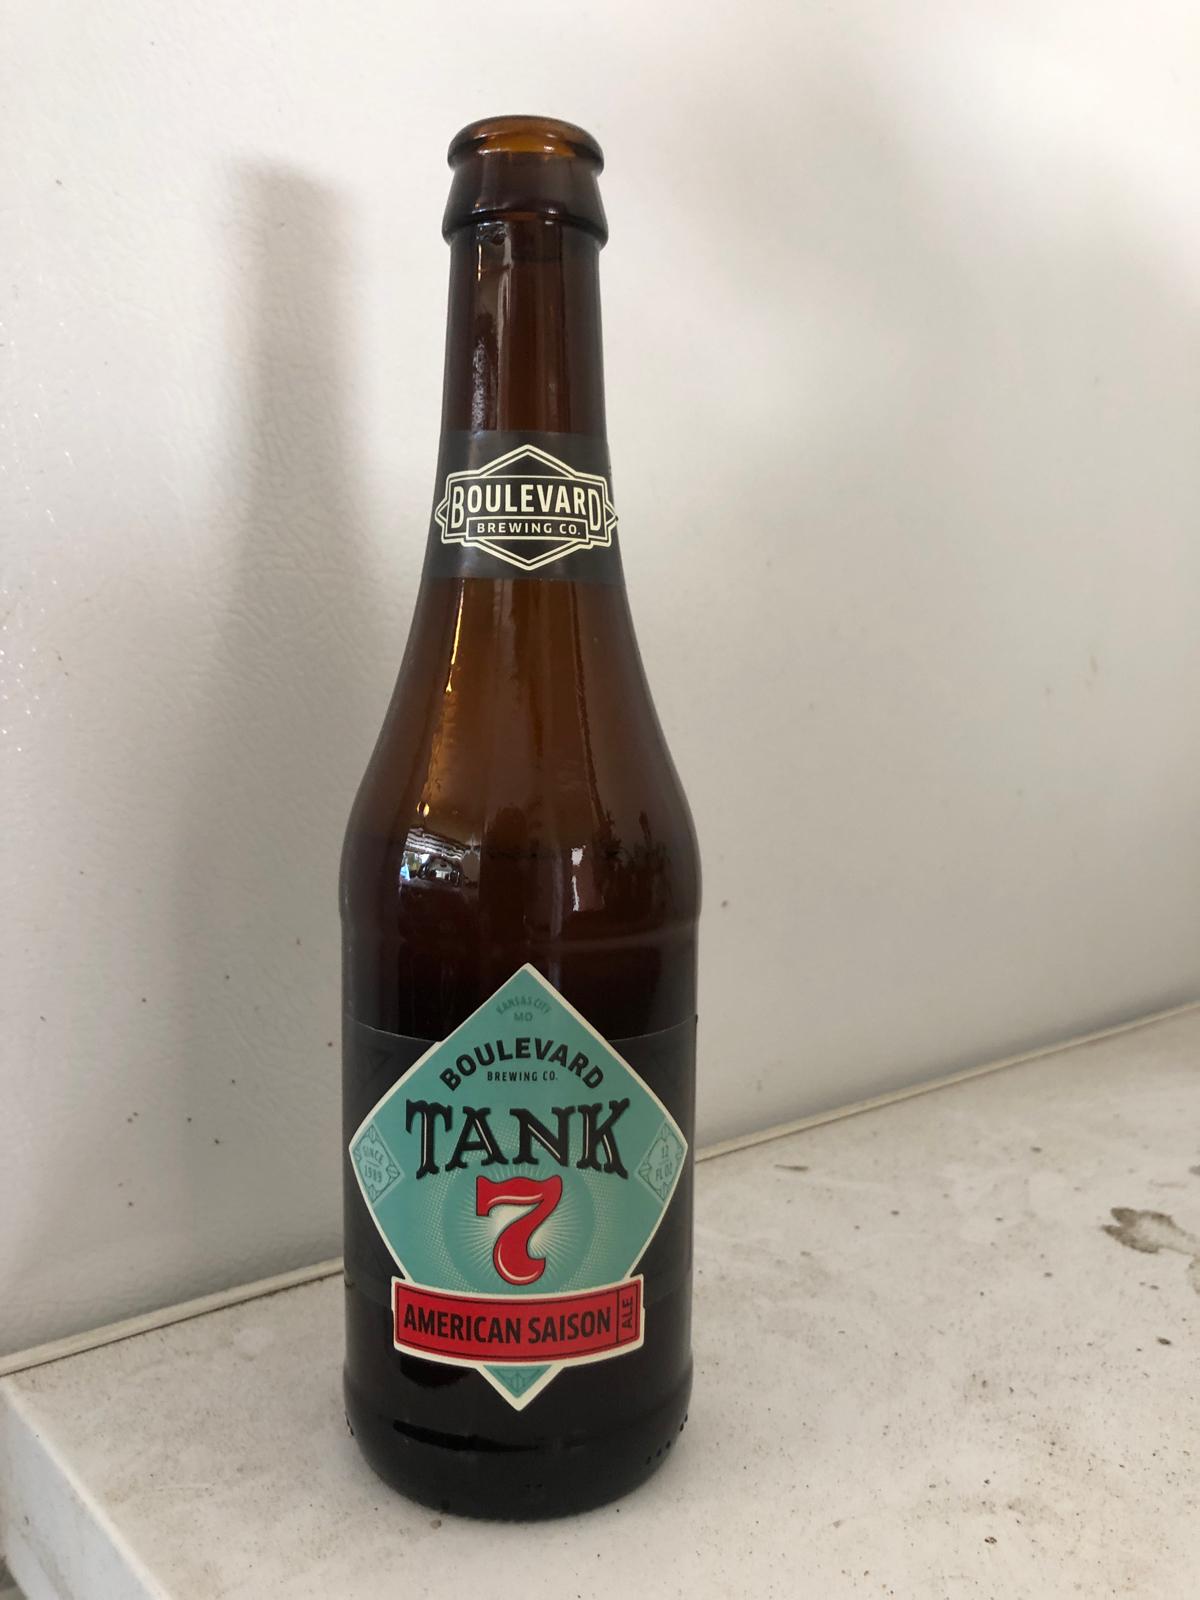 Tank 7 American Saison Ale